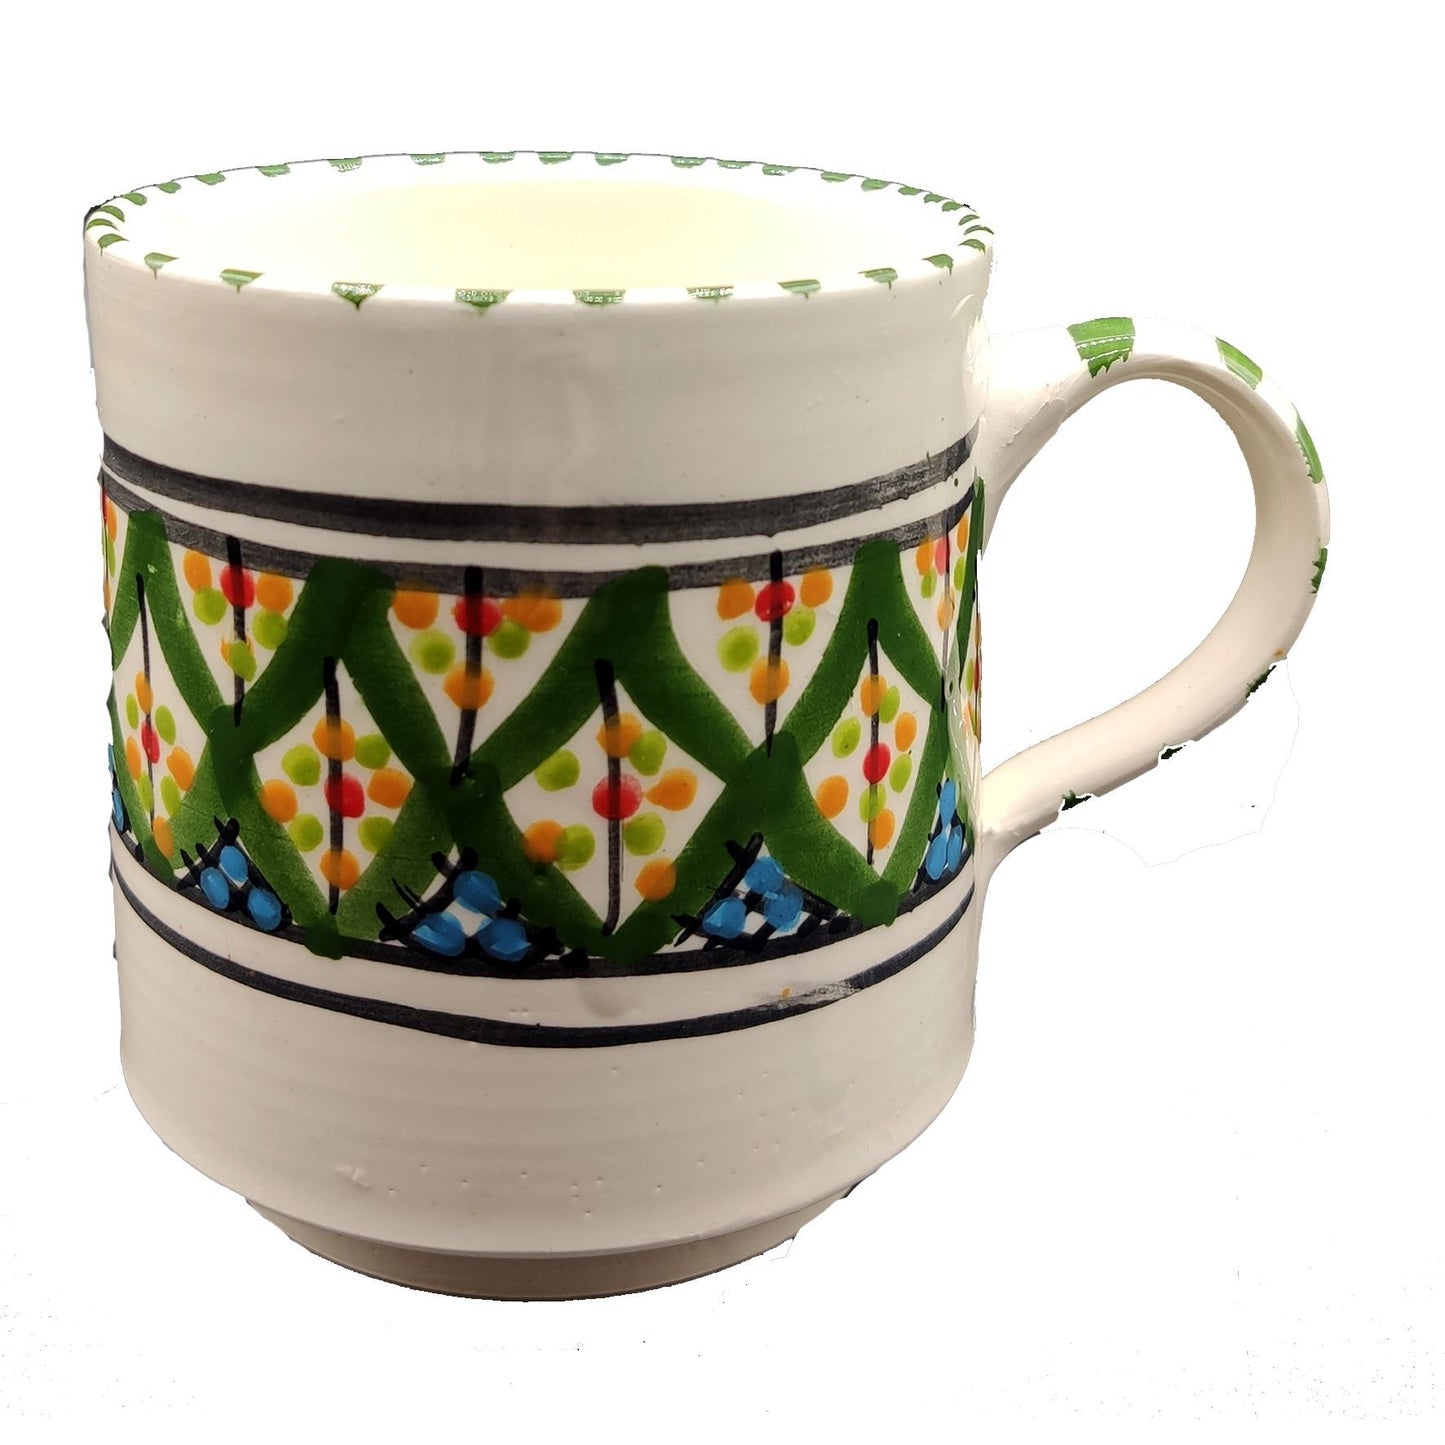 Bicchiere Boccale Ceramica Terracotta Etnico Tunisino Marocchino 2212200901